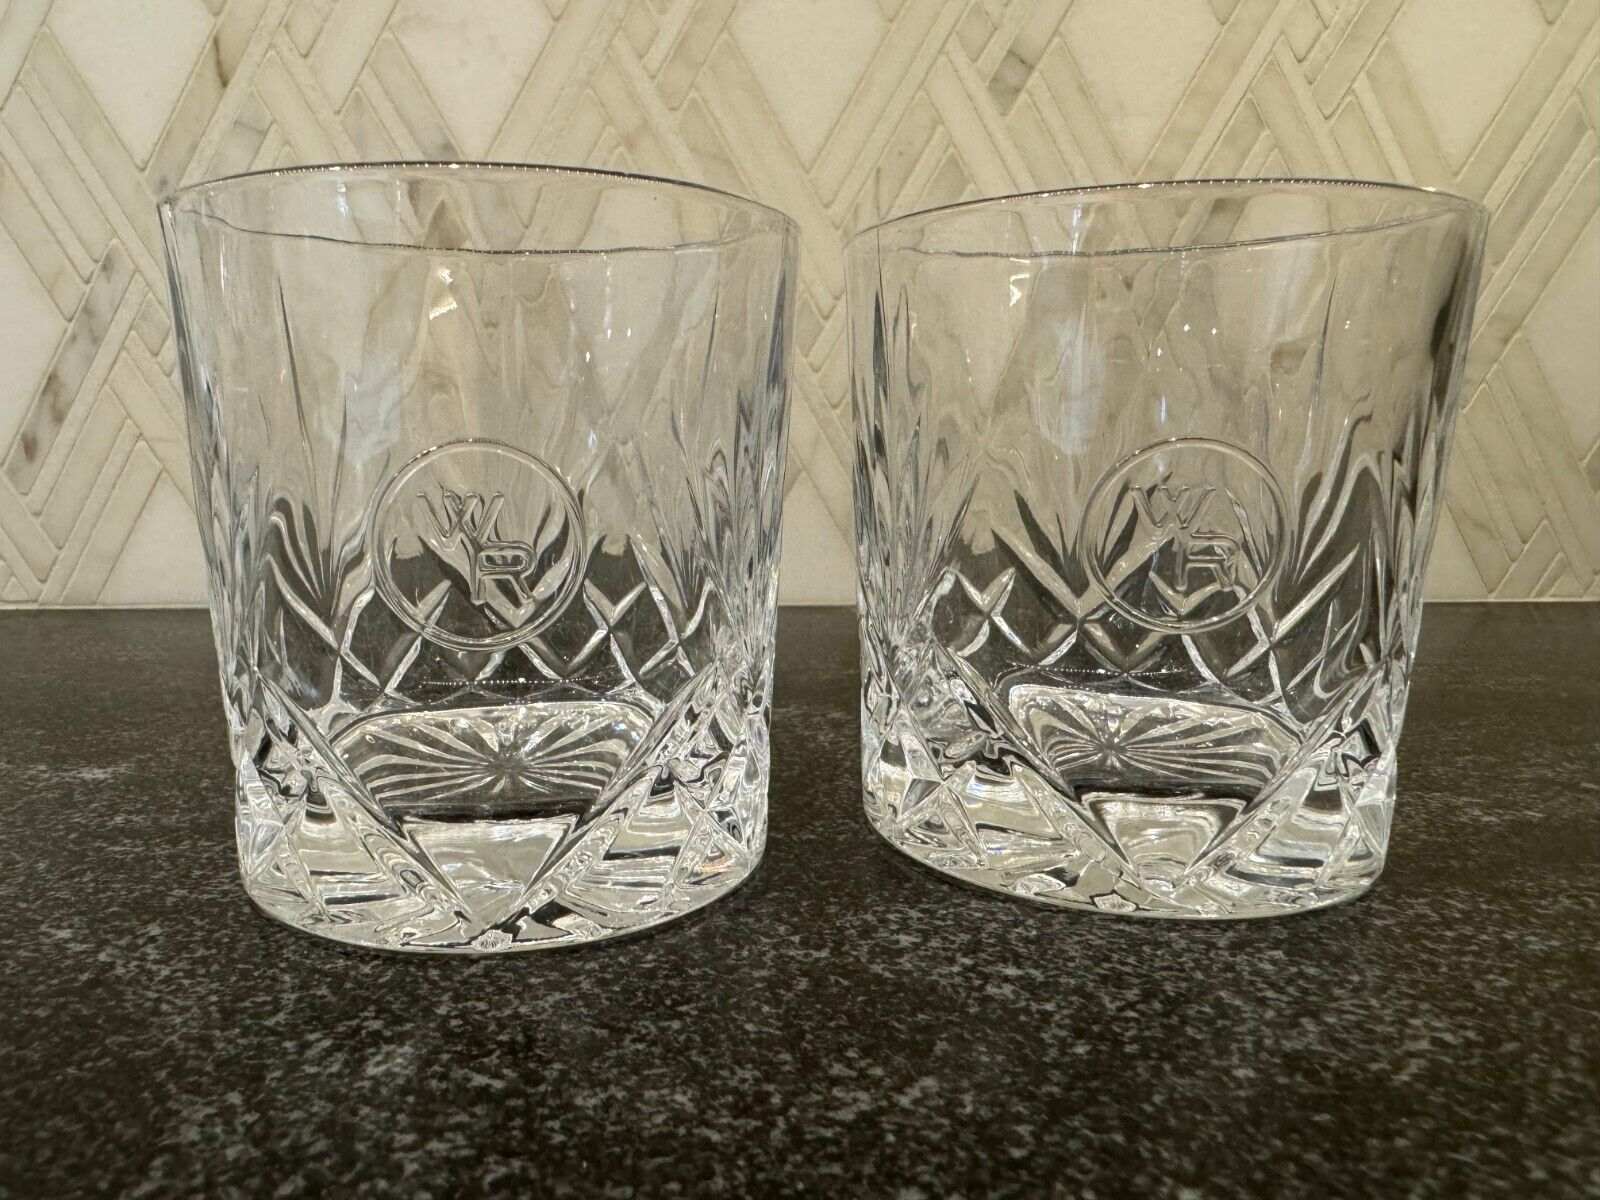 Woodford Reserve Glencairn Crystal Whiskey Glasses | Set of 2